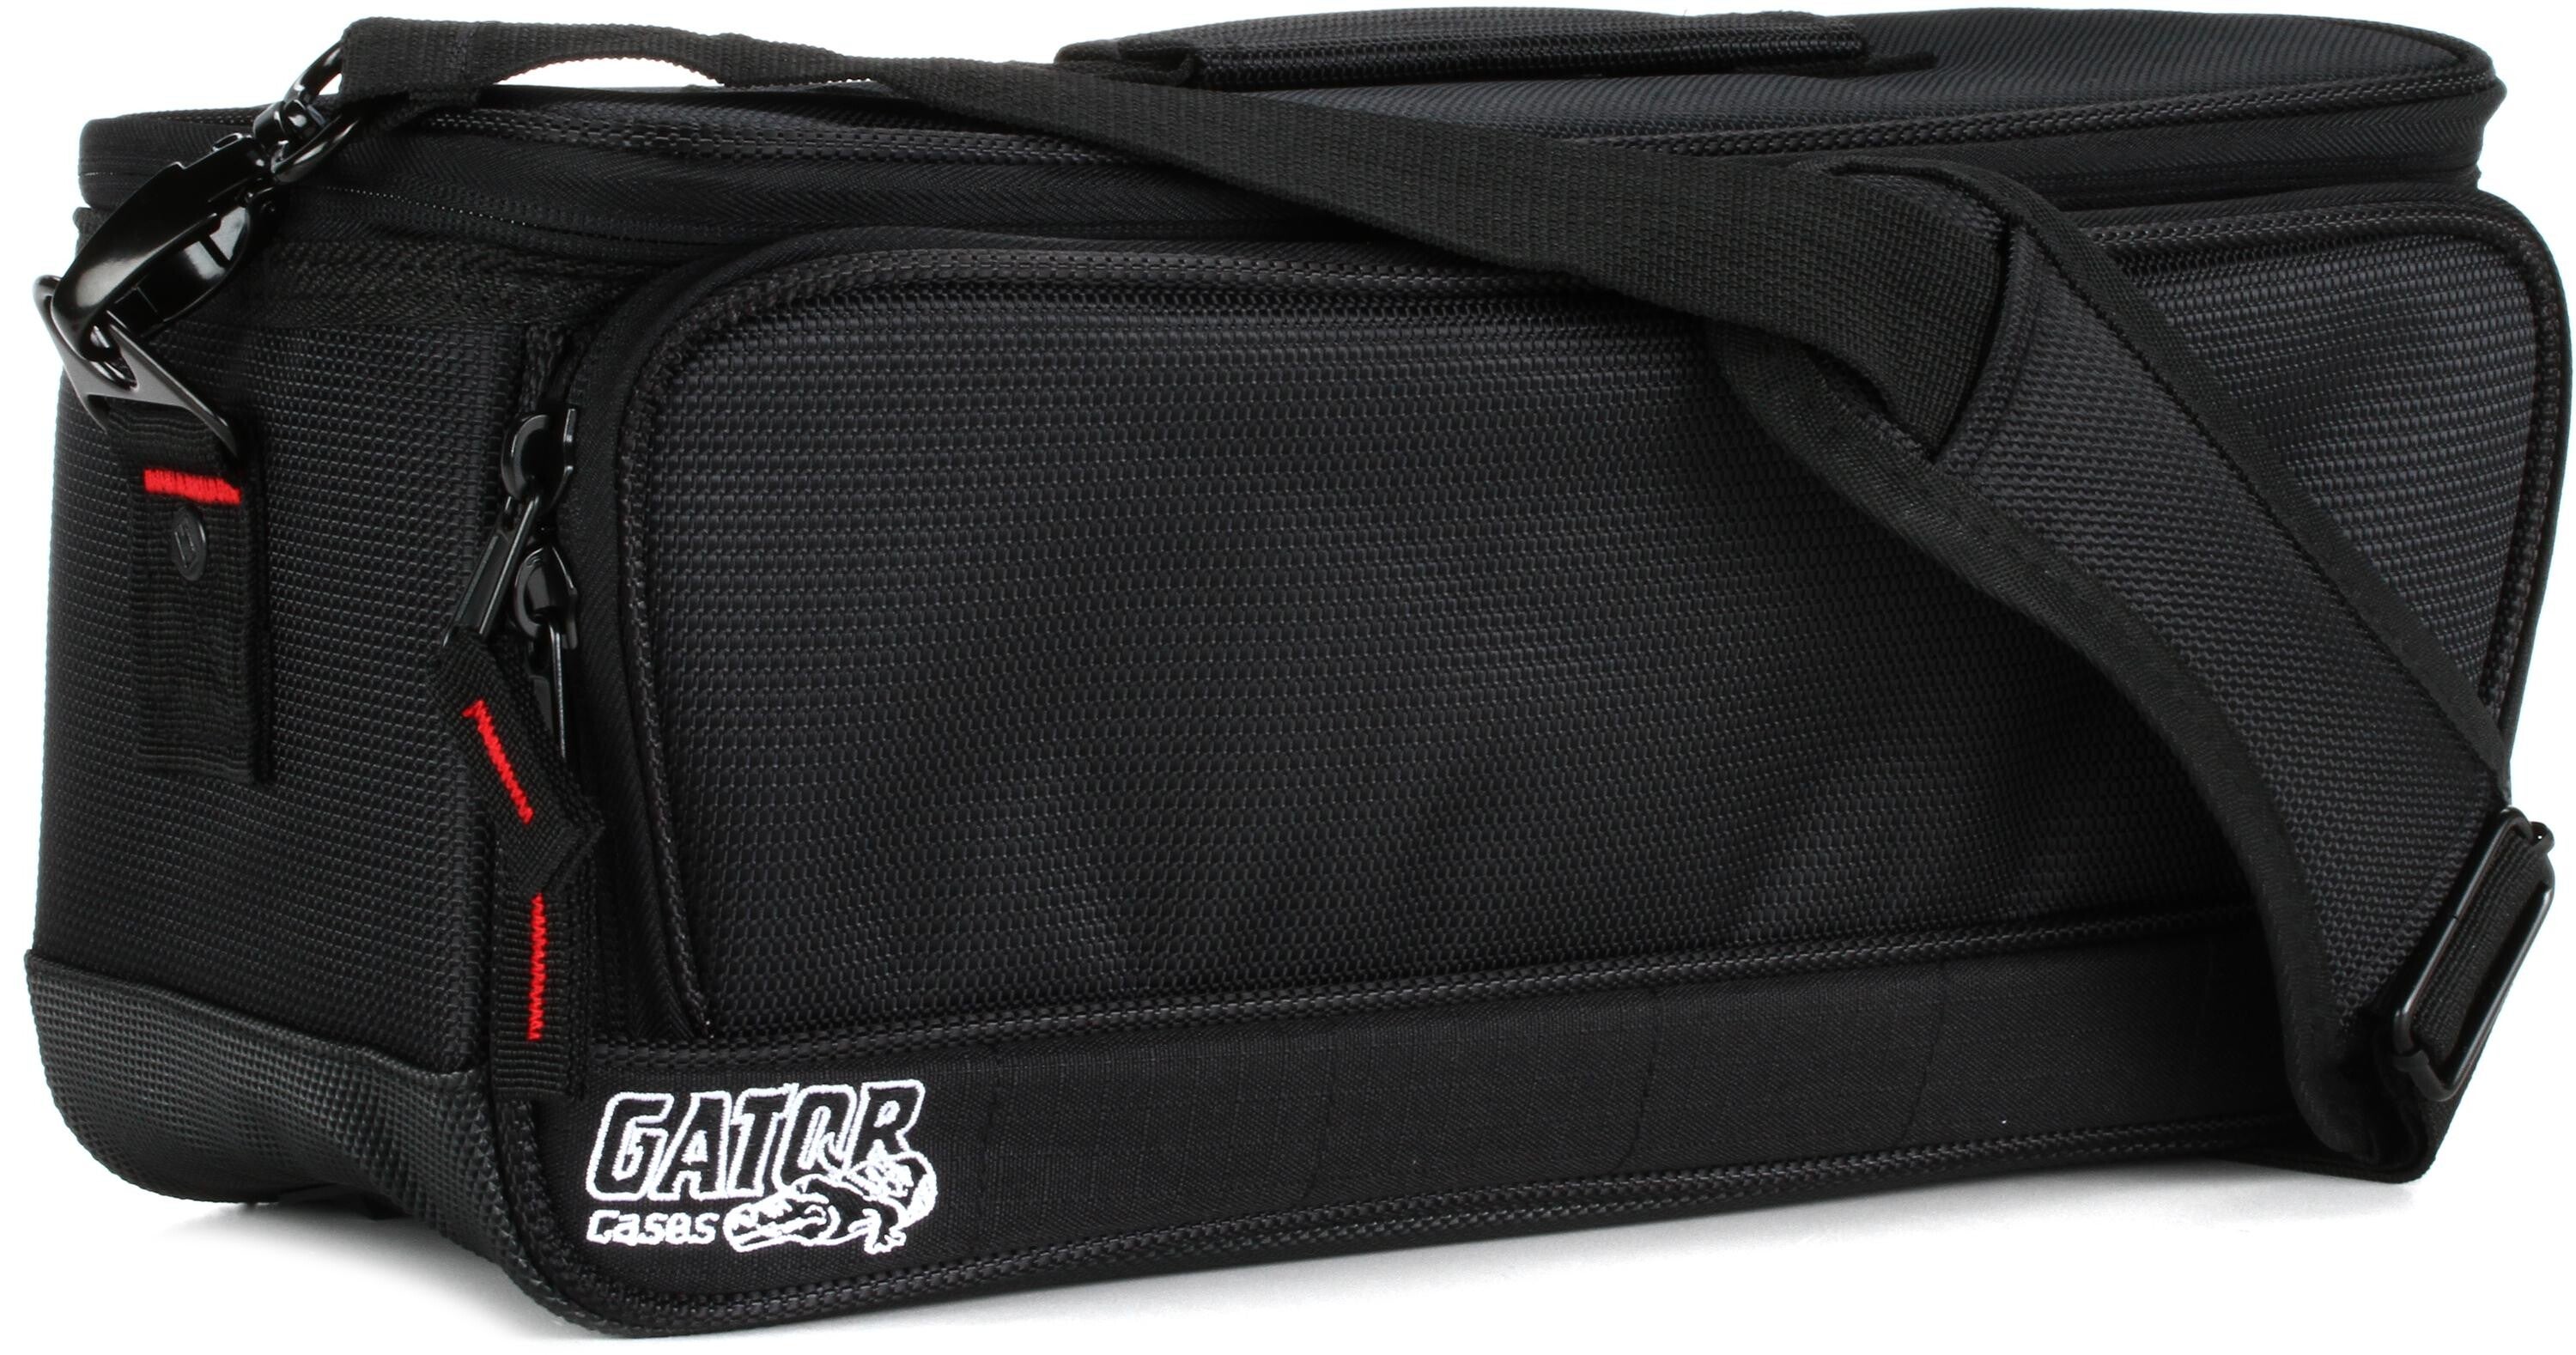 Bundled Item: Gator G-MIXERBAG-1306 Mixer Bag